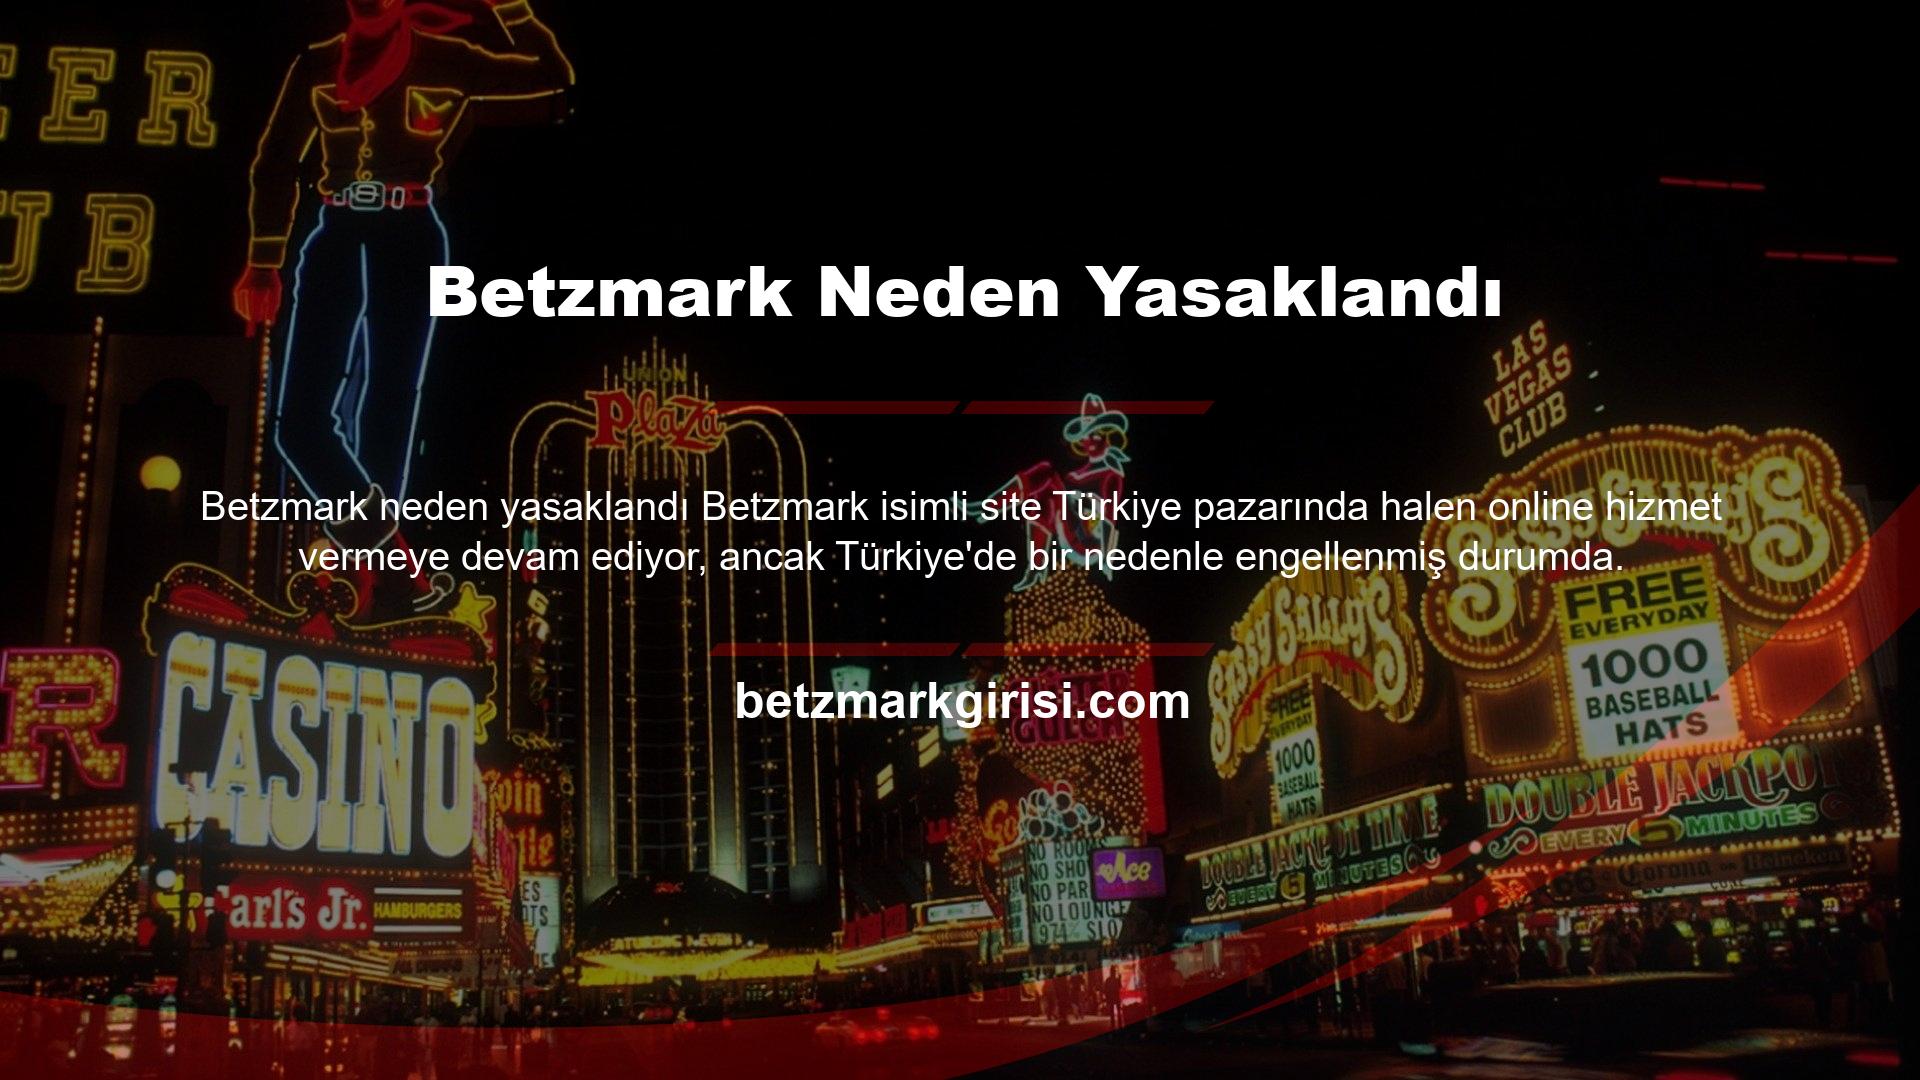 Betzmark Türkçe Adres web sitesini kullanarak Türkiye'de bir IP adresi kaydettirirseniz, bir yasaklama kararıyla karşılaşabilirsiniz